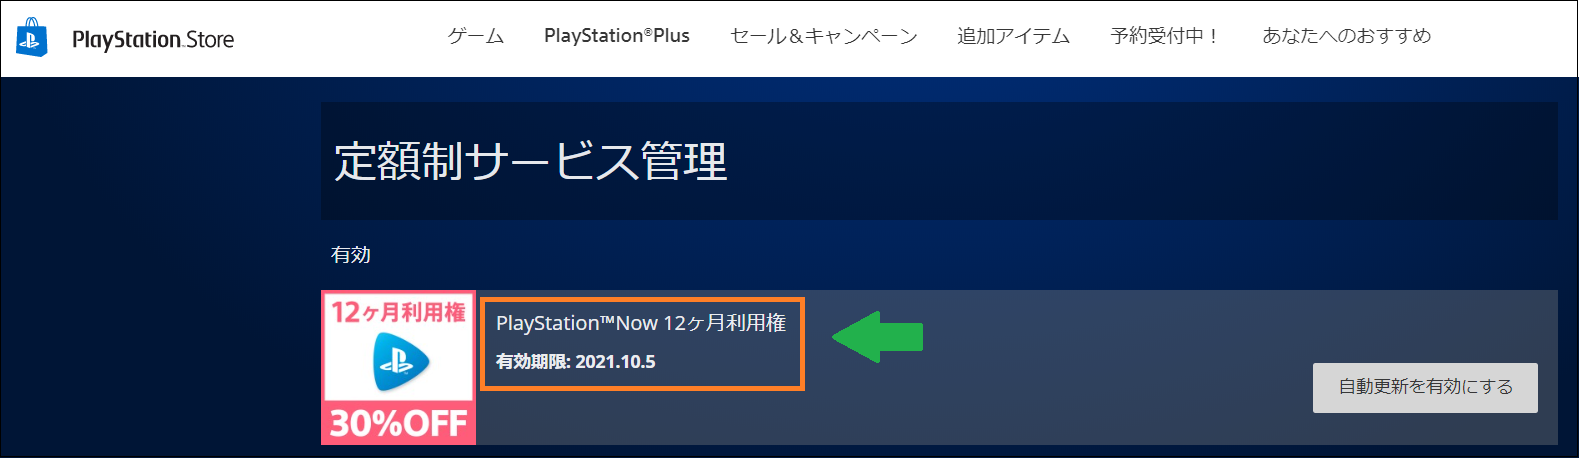 PlayStation Storeの定額制サービス管理メニューで、PS Nowの12か月利用権で利用中の画面